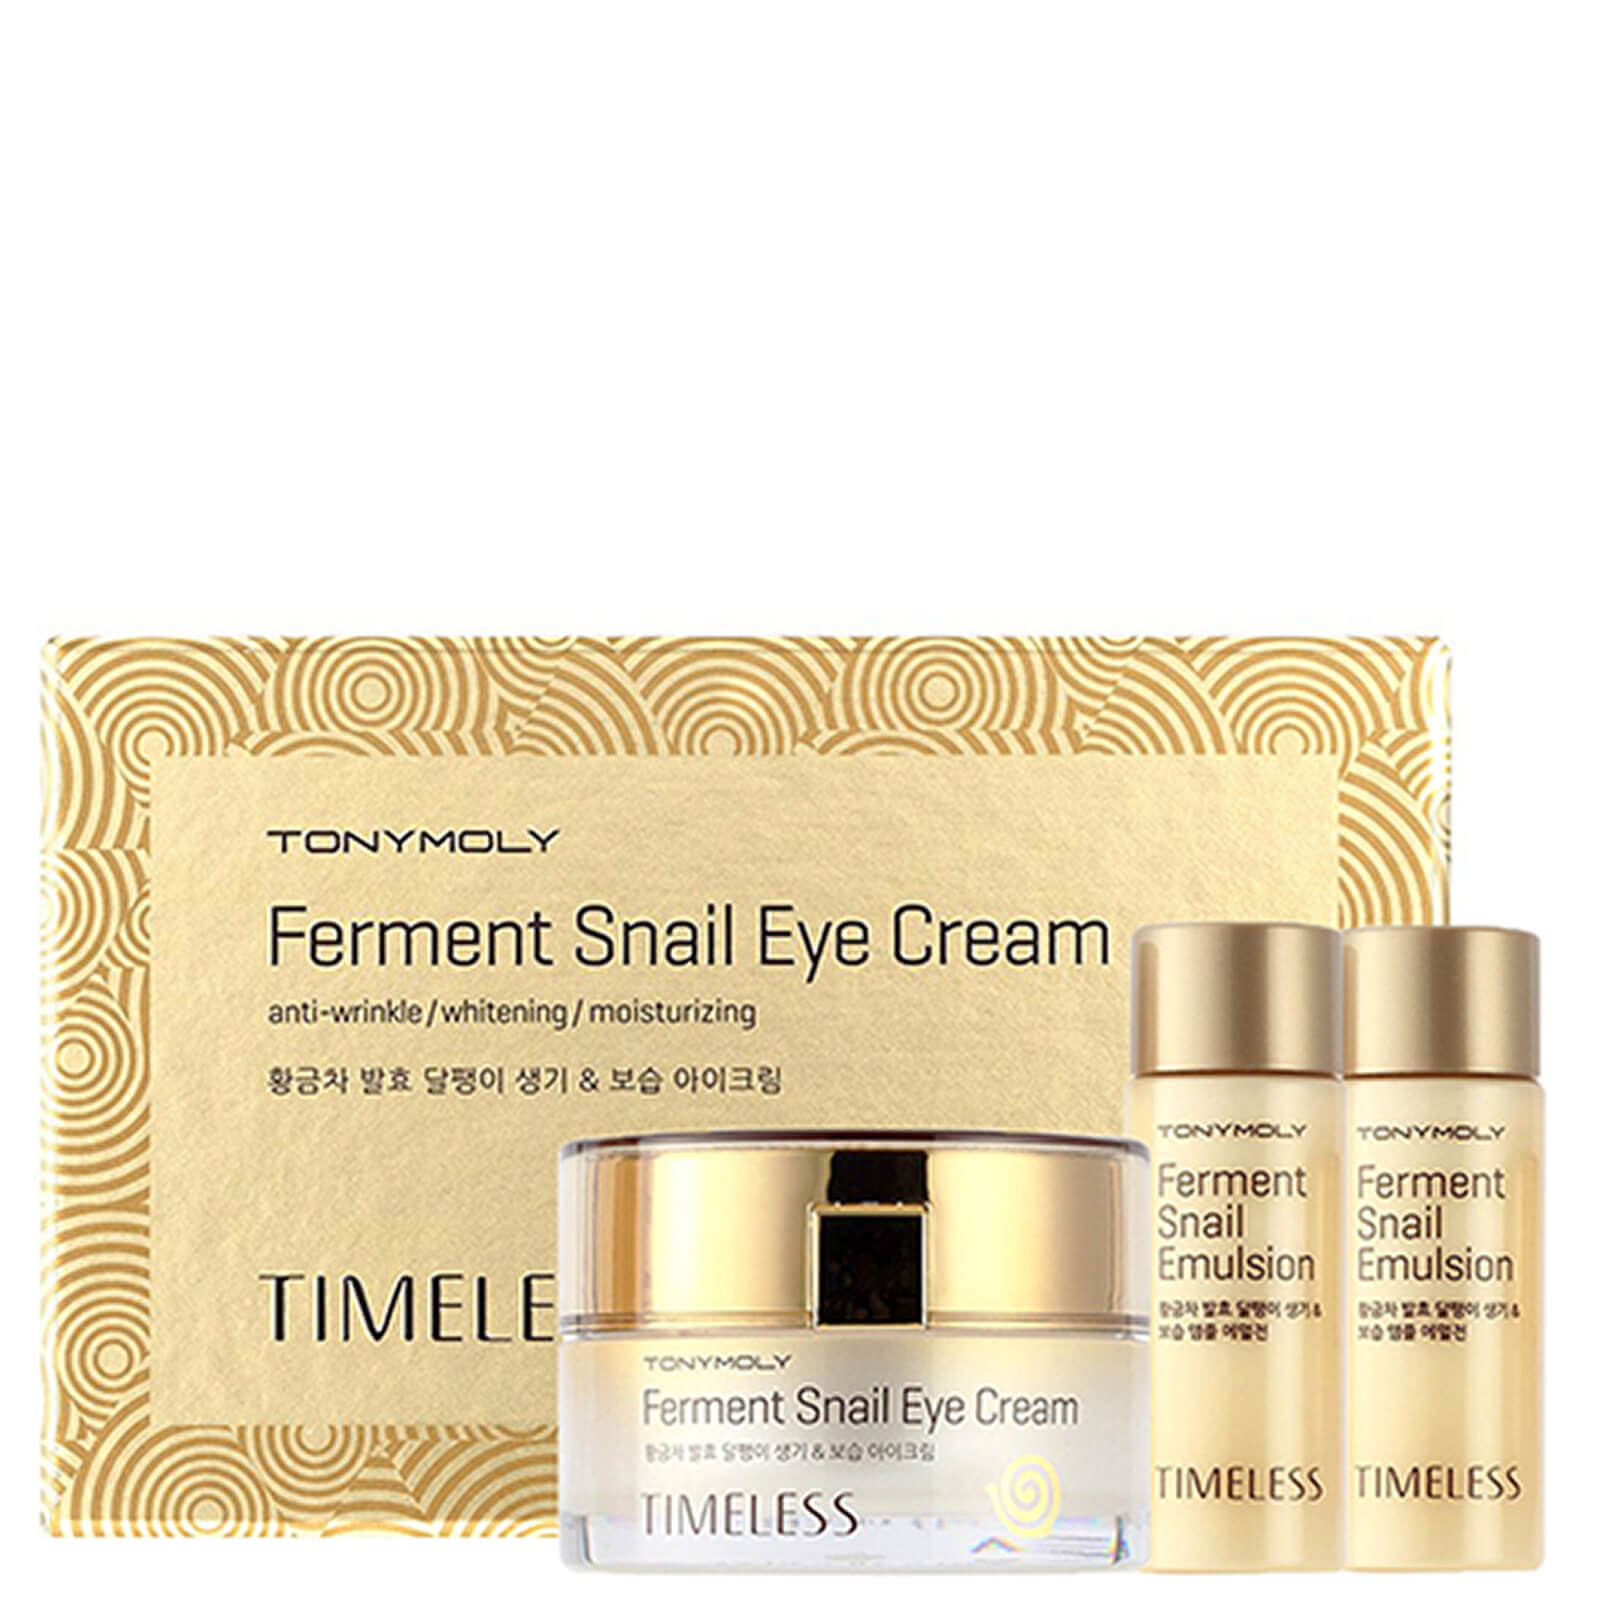 TONYMOLY Timeless Ferment Snail Eye Cream